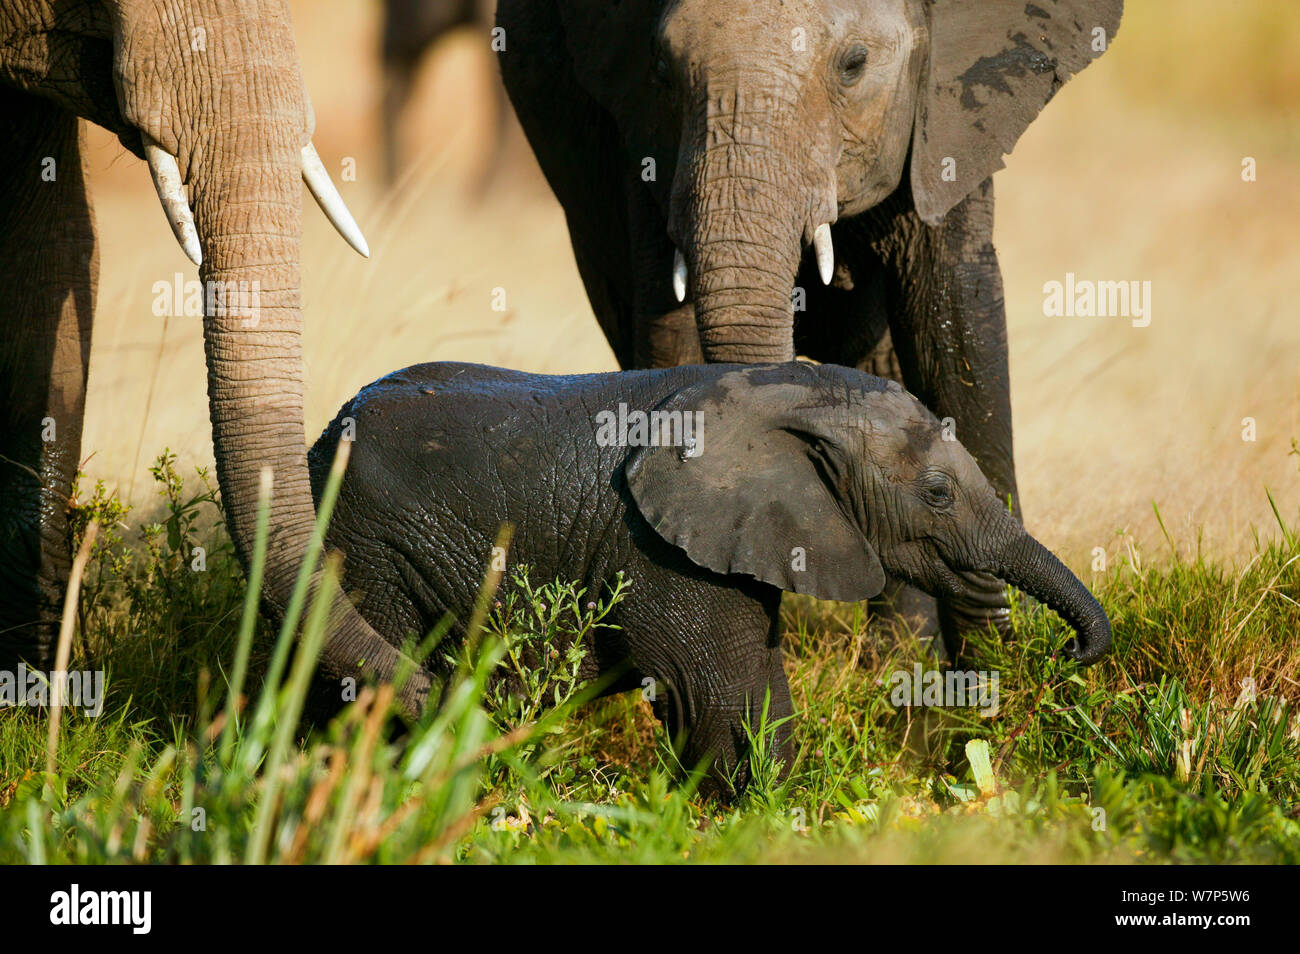 L'éléphant africain (Loxodonta africana), la mère et les jeunes. Masai-Mara Game Reserve, Kenya. Banque D'Images